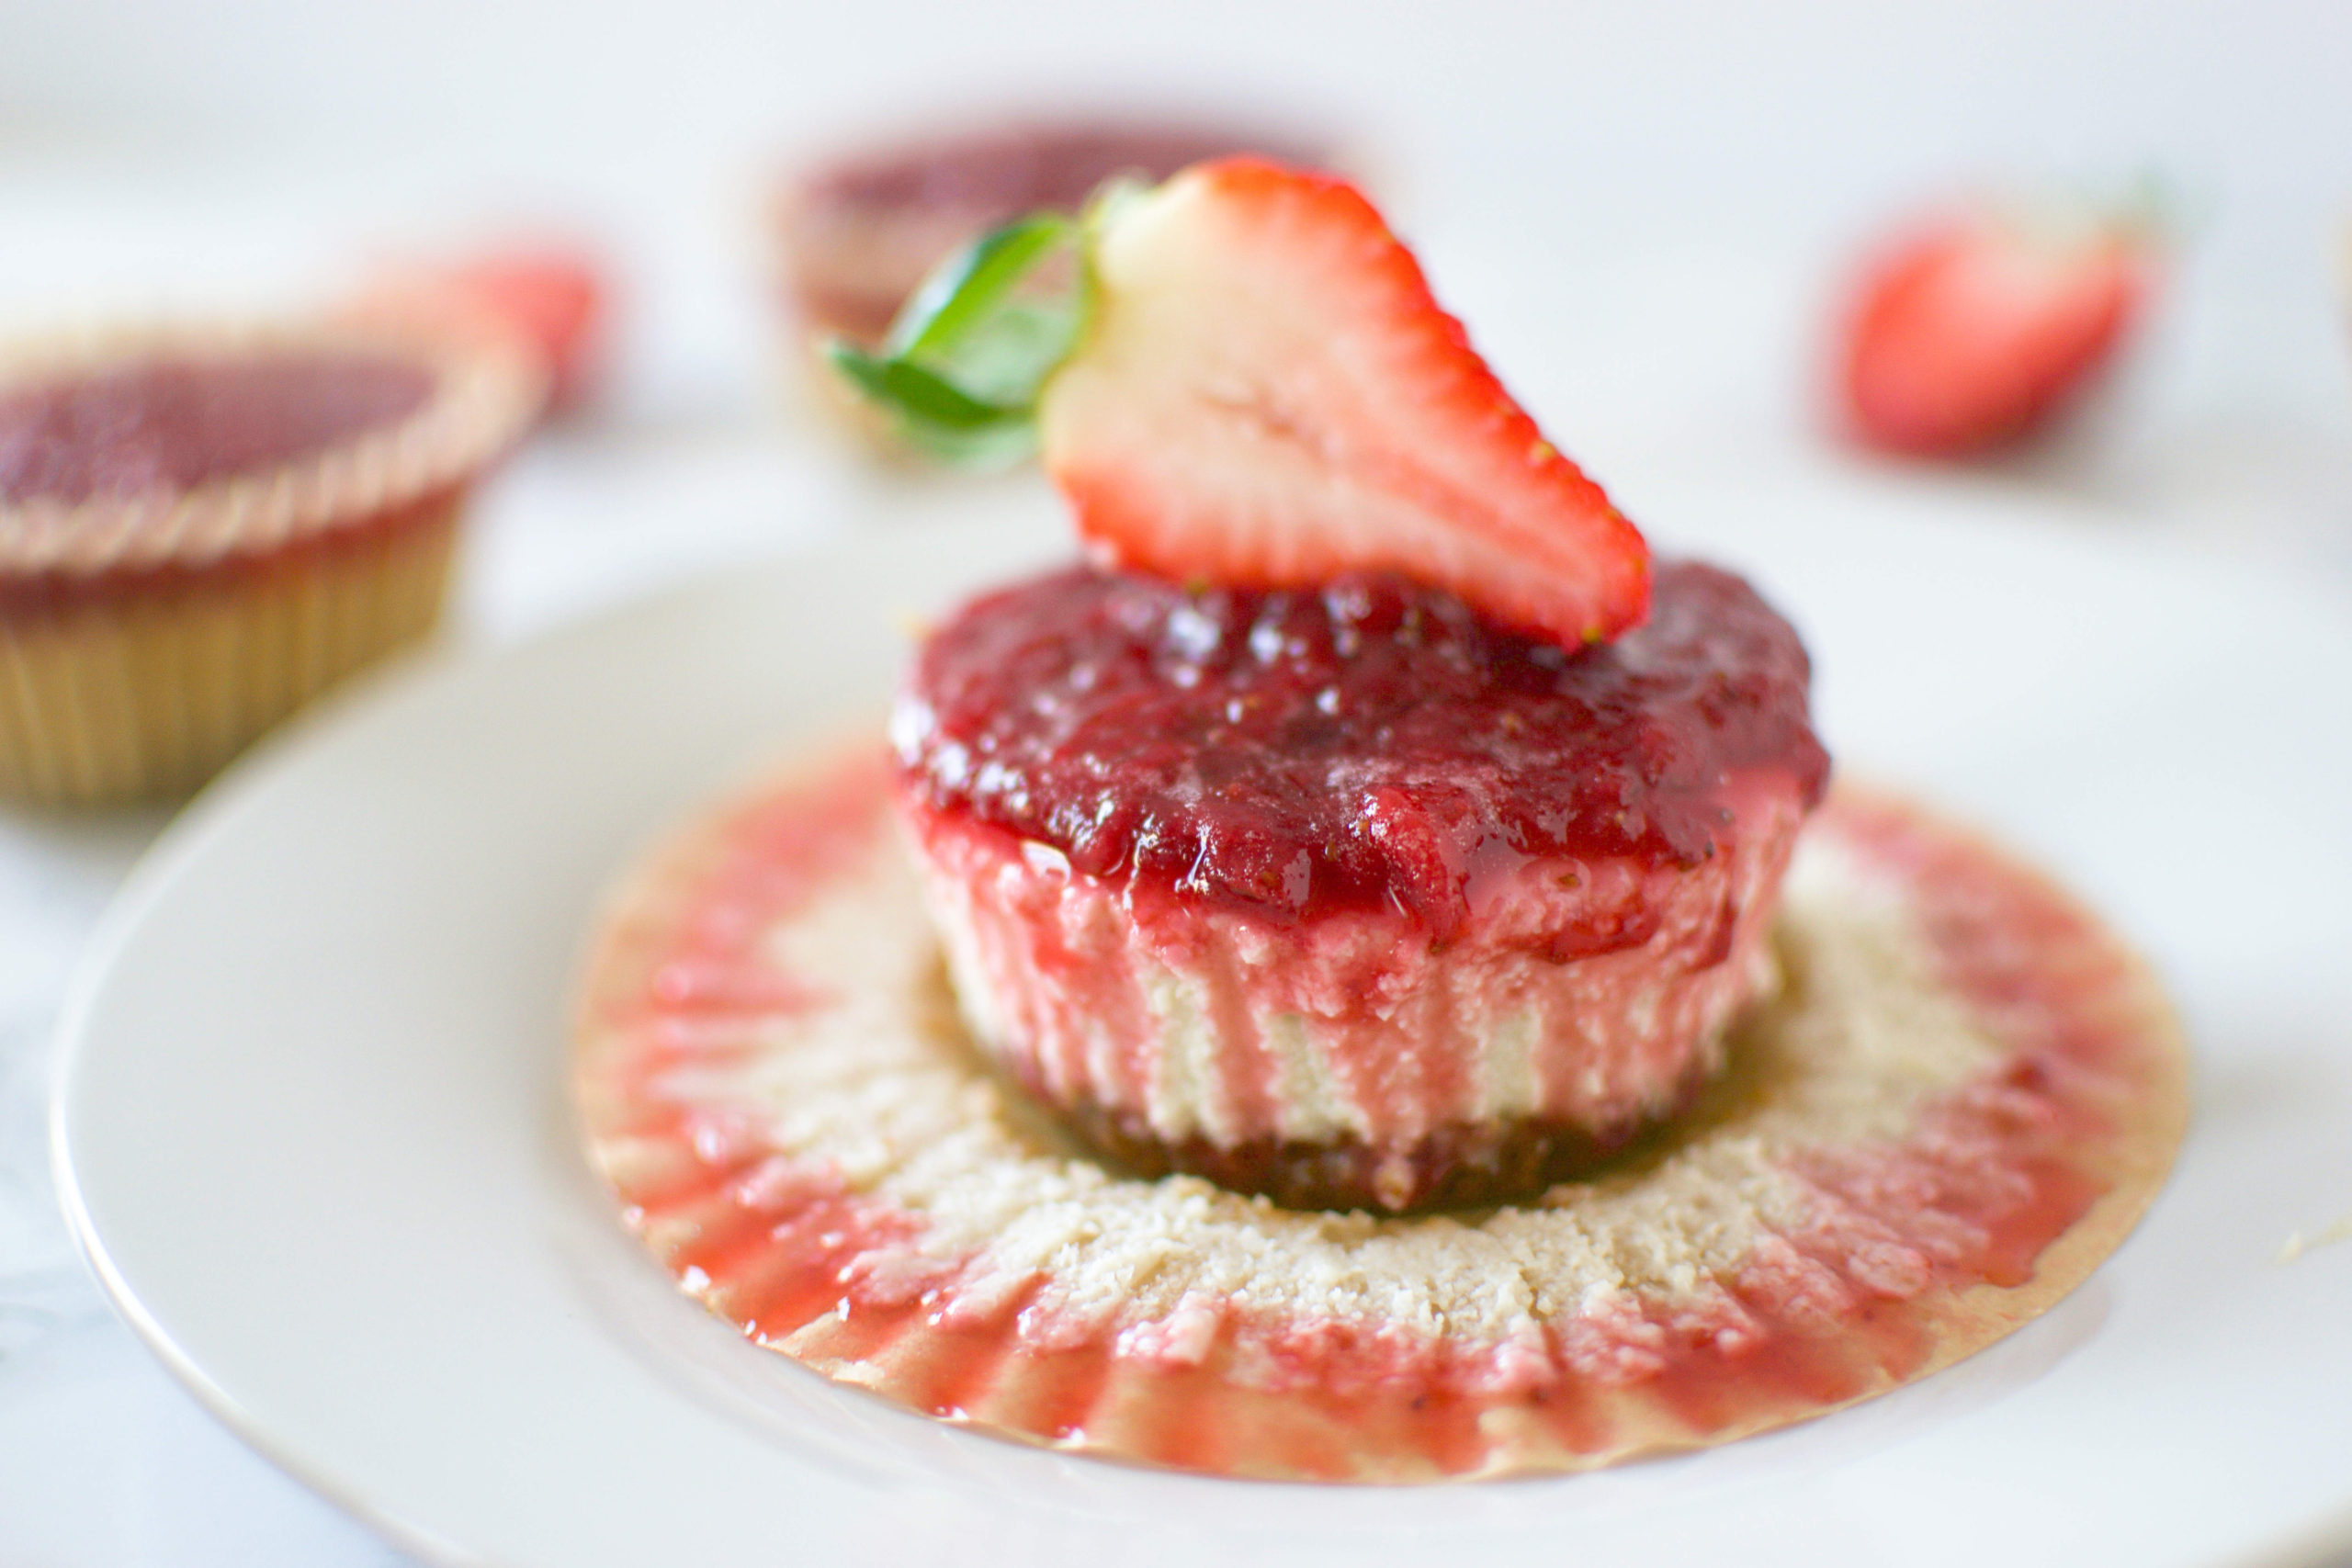 Vegan Strawberry Cheesecake Bites